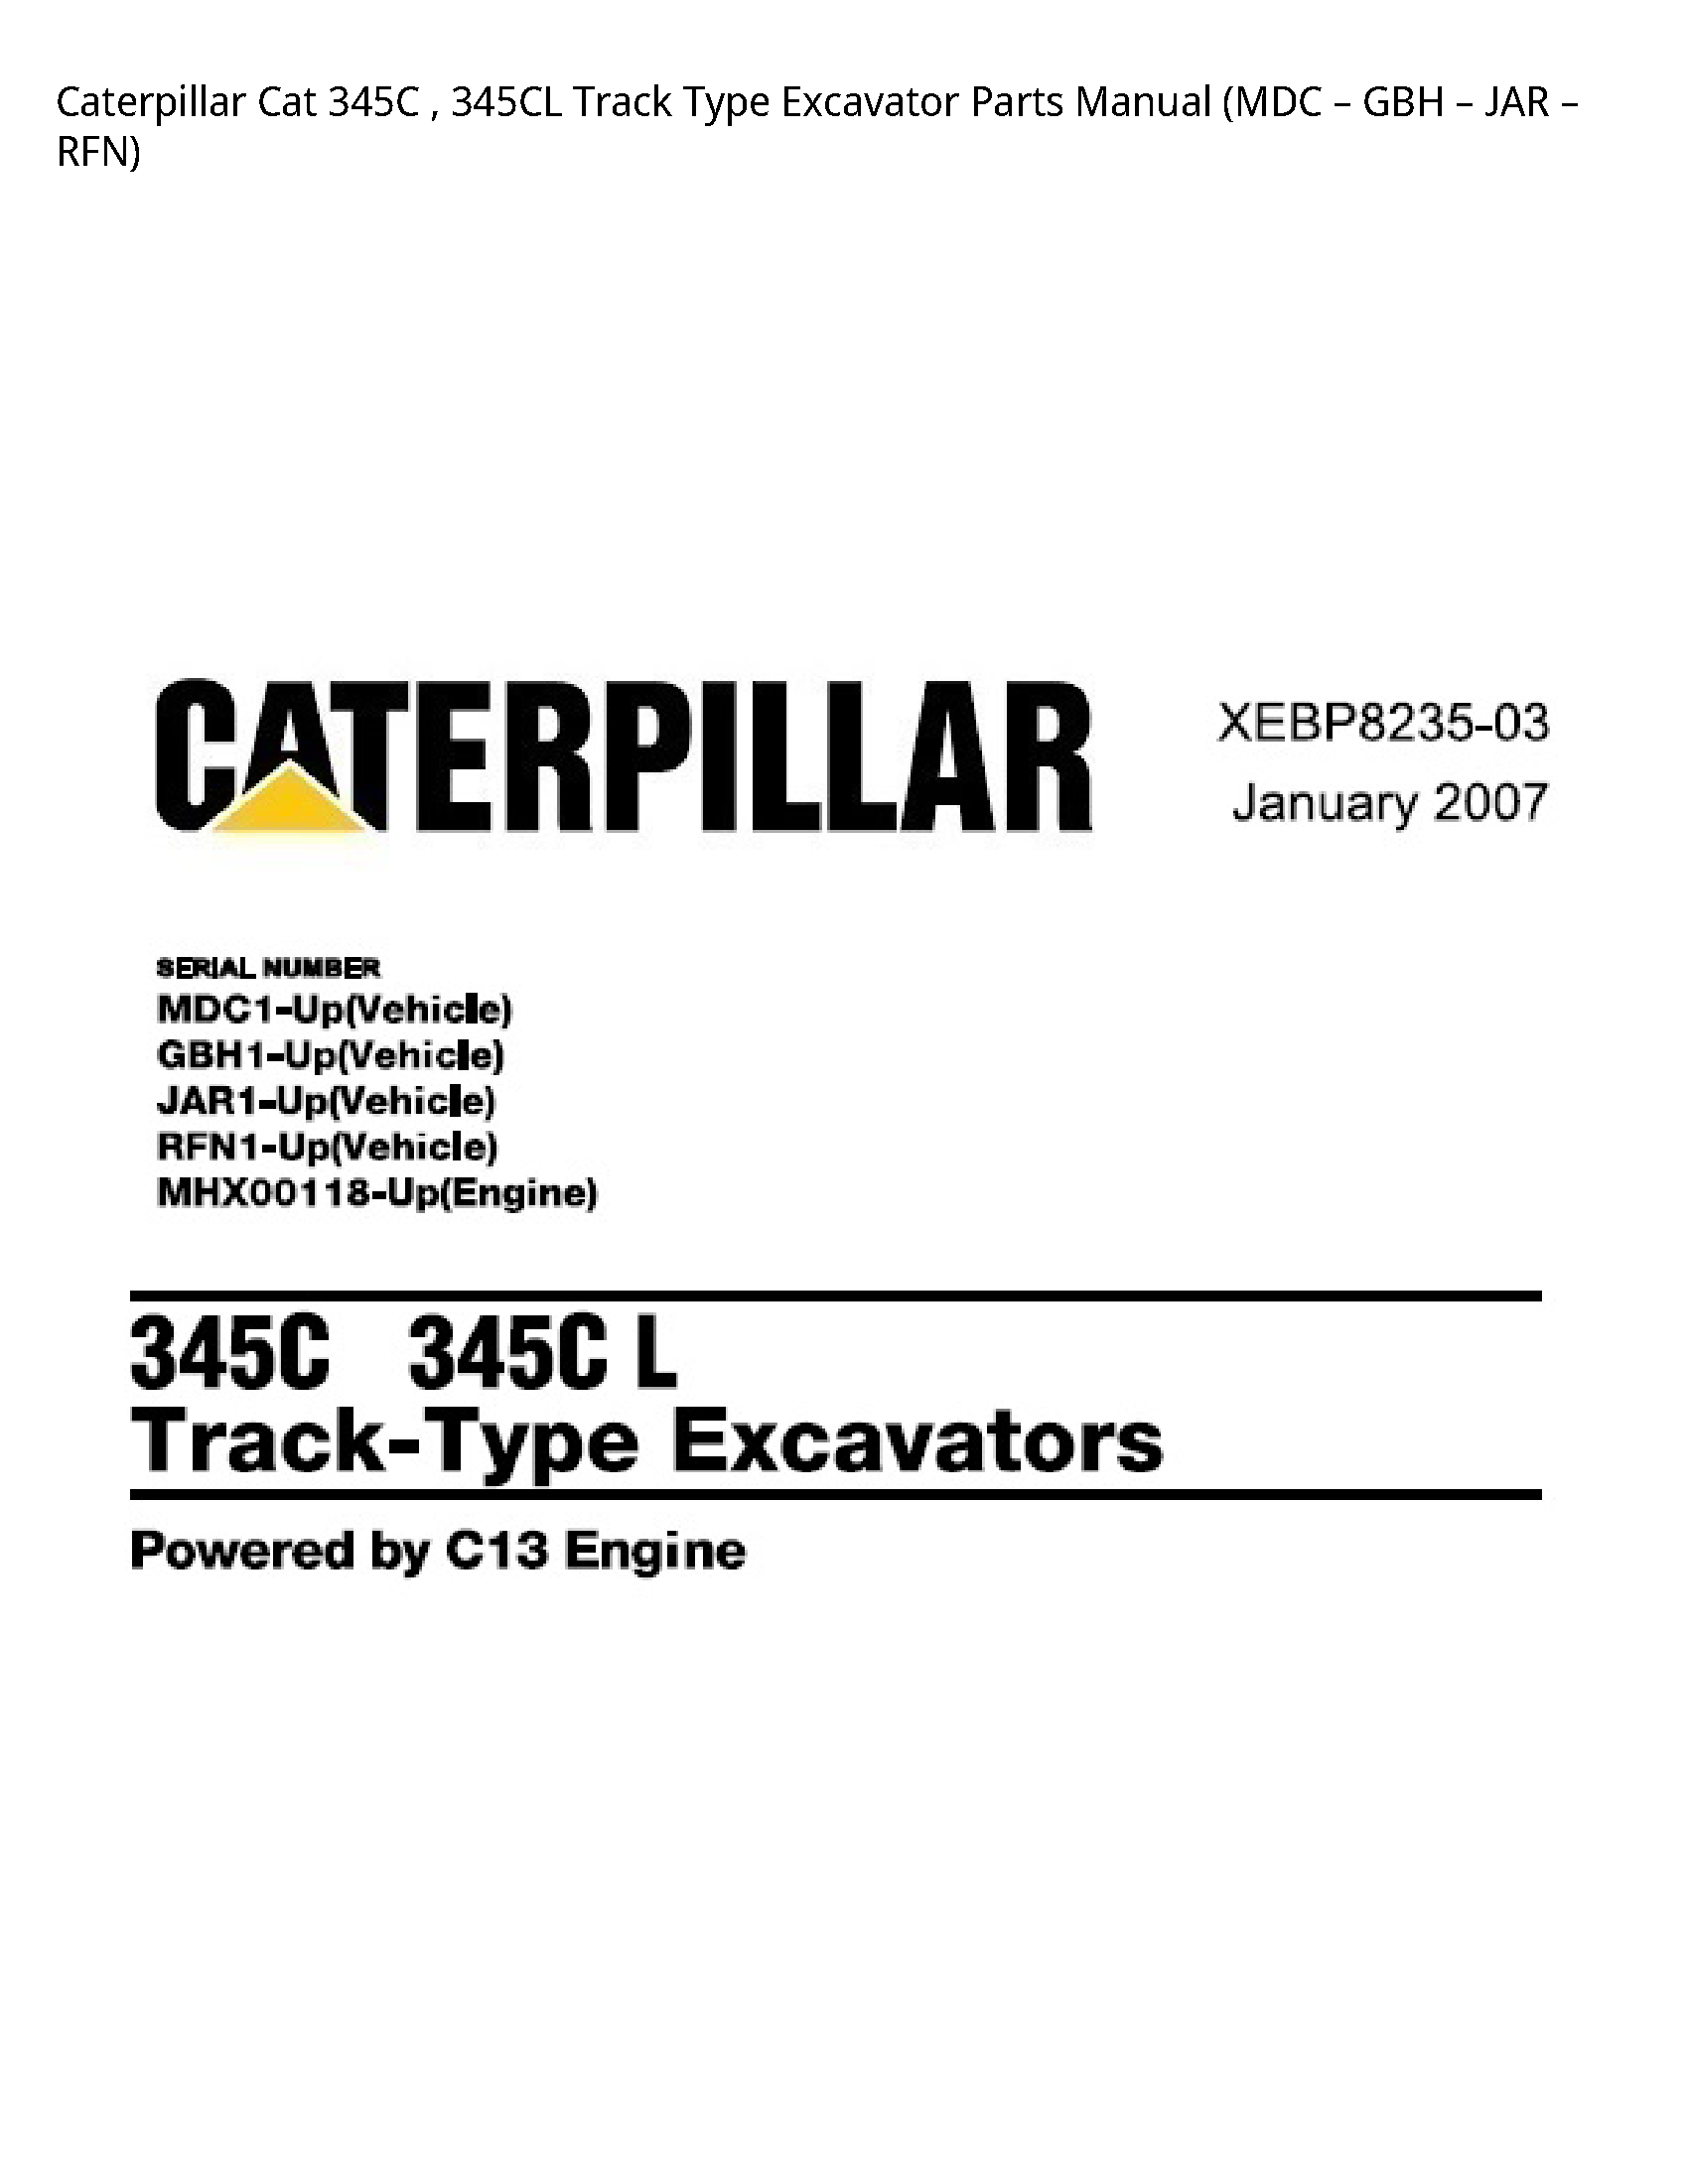 Caterpillar 345C Cat Track Type Excavator Parts manual